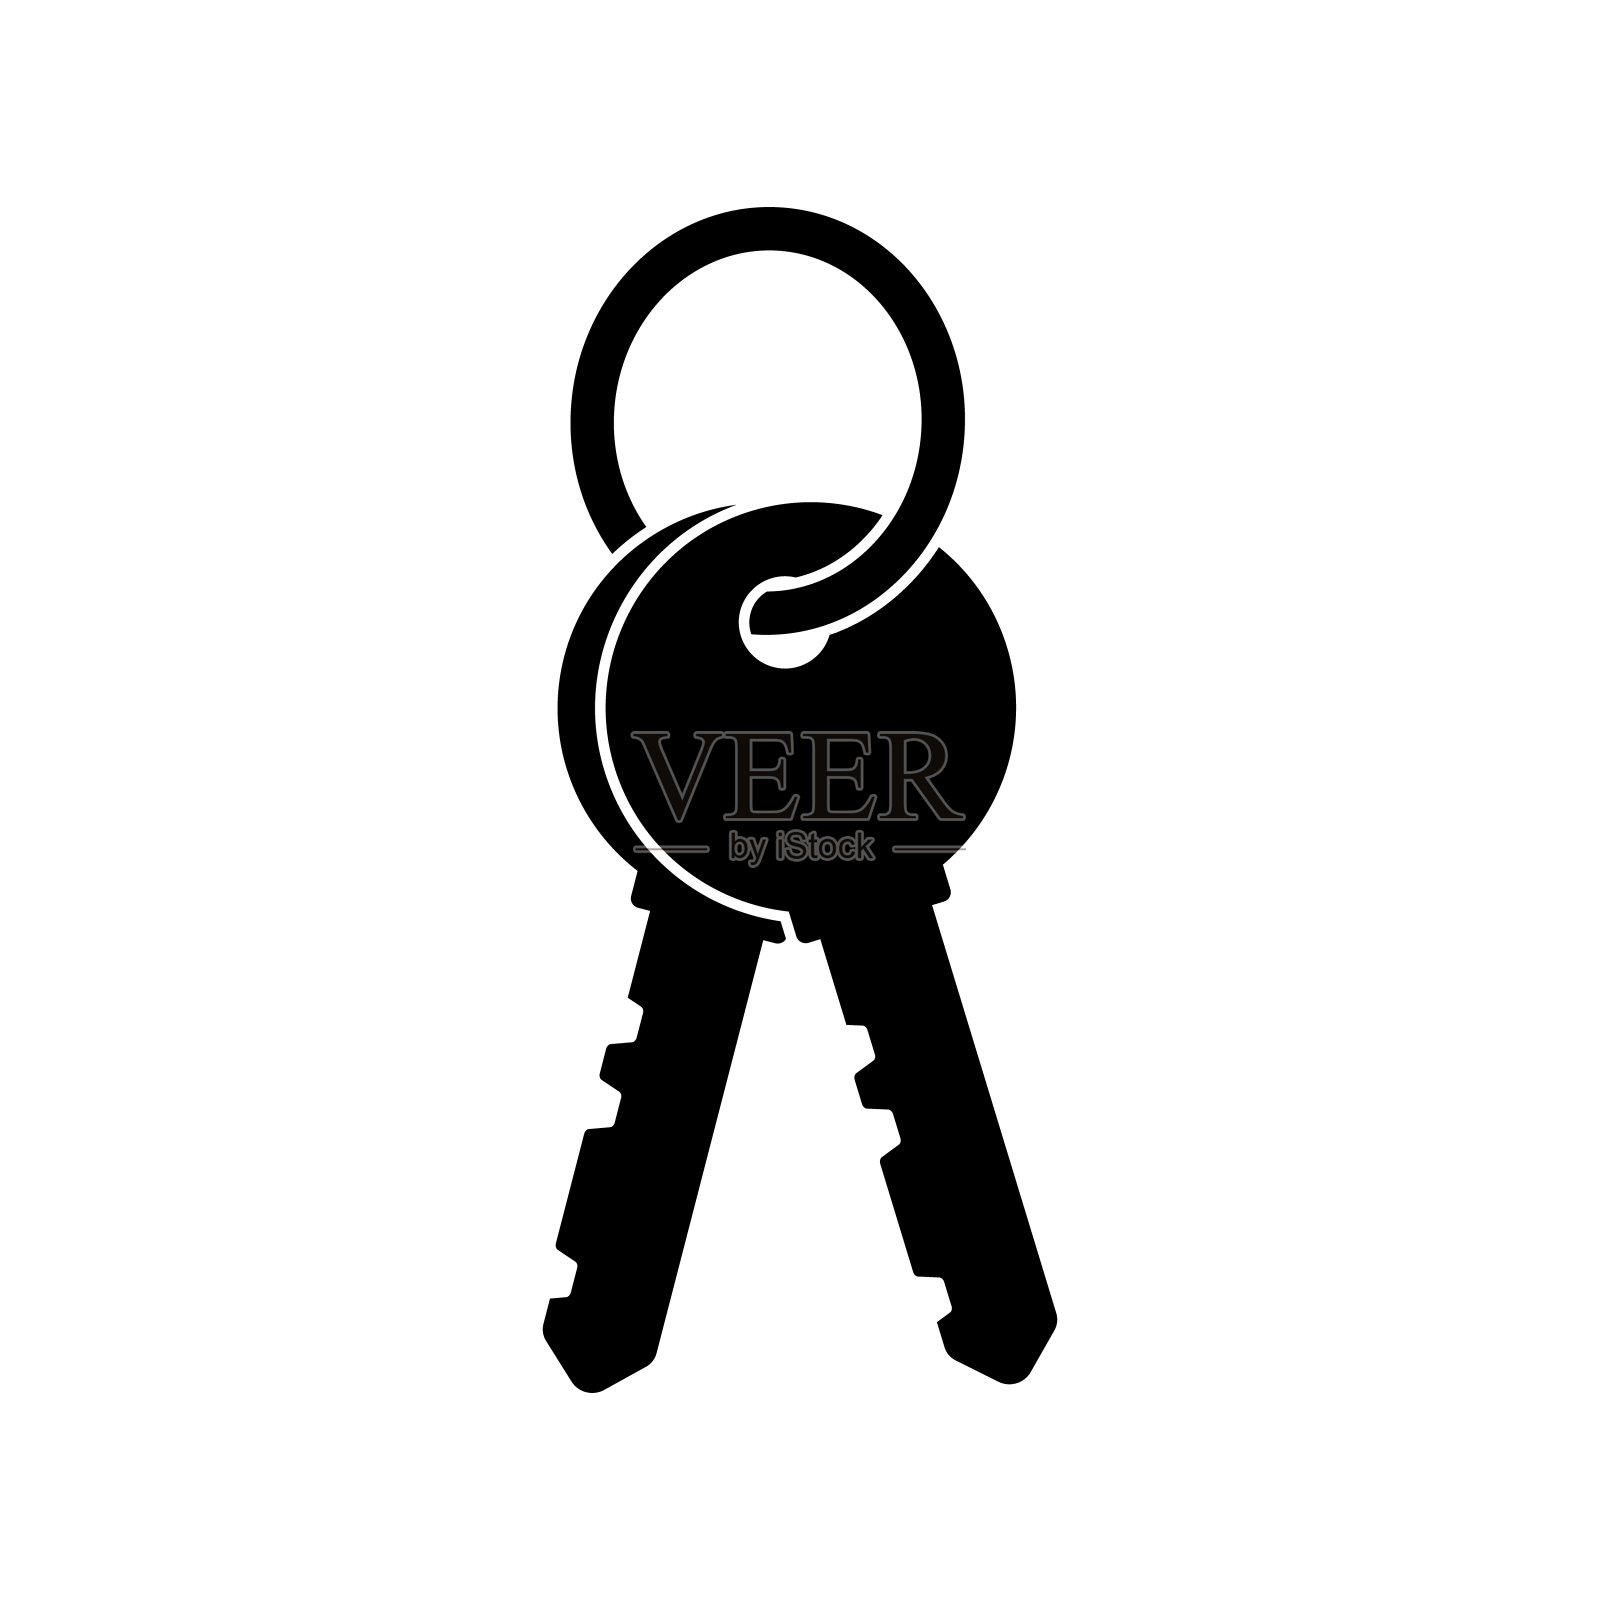 锁定按钮设计元素素材免费下载(图片编号:3836186)-六图网